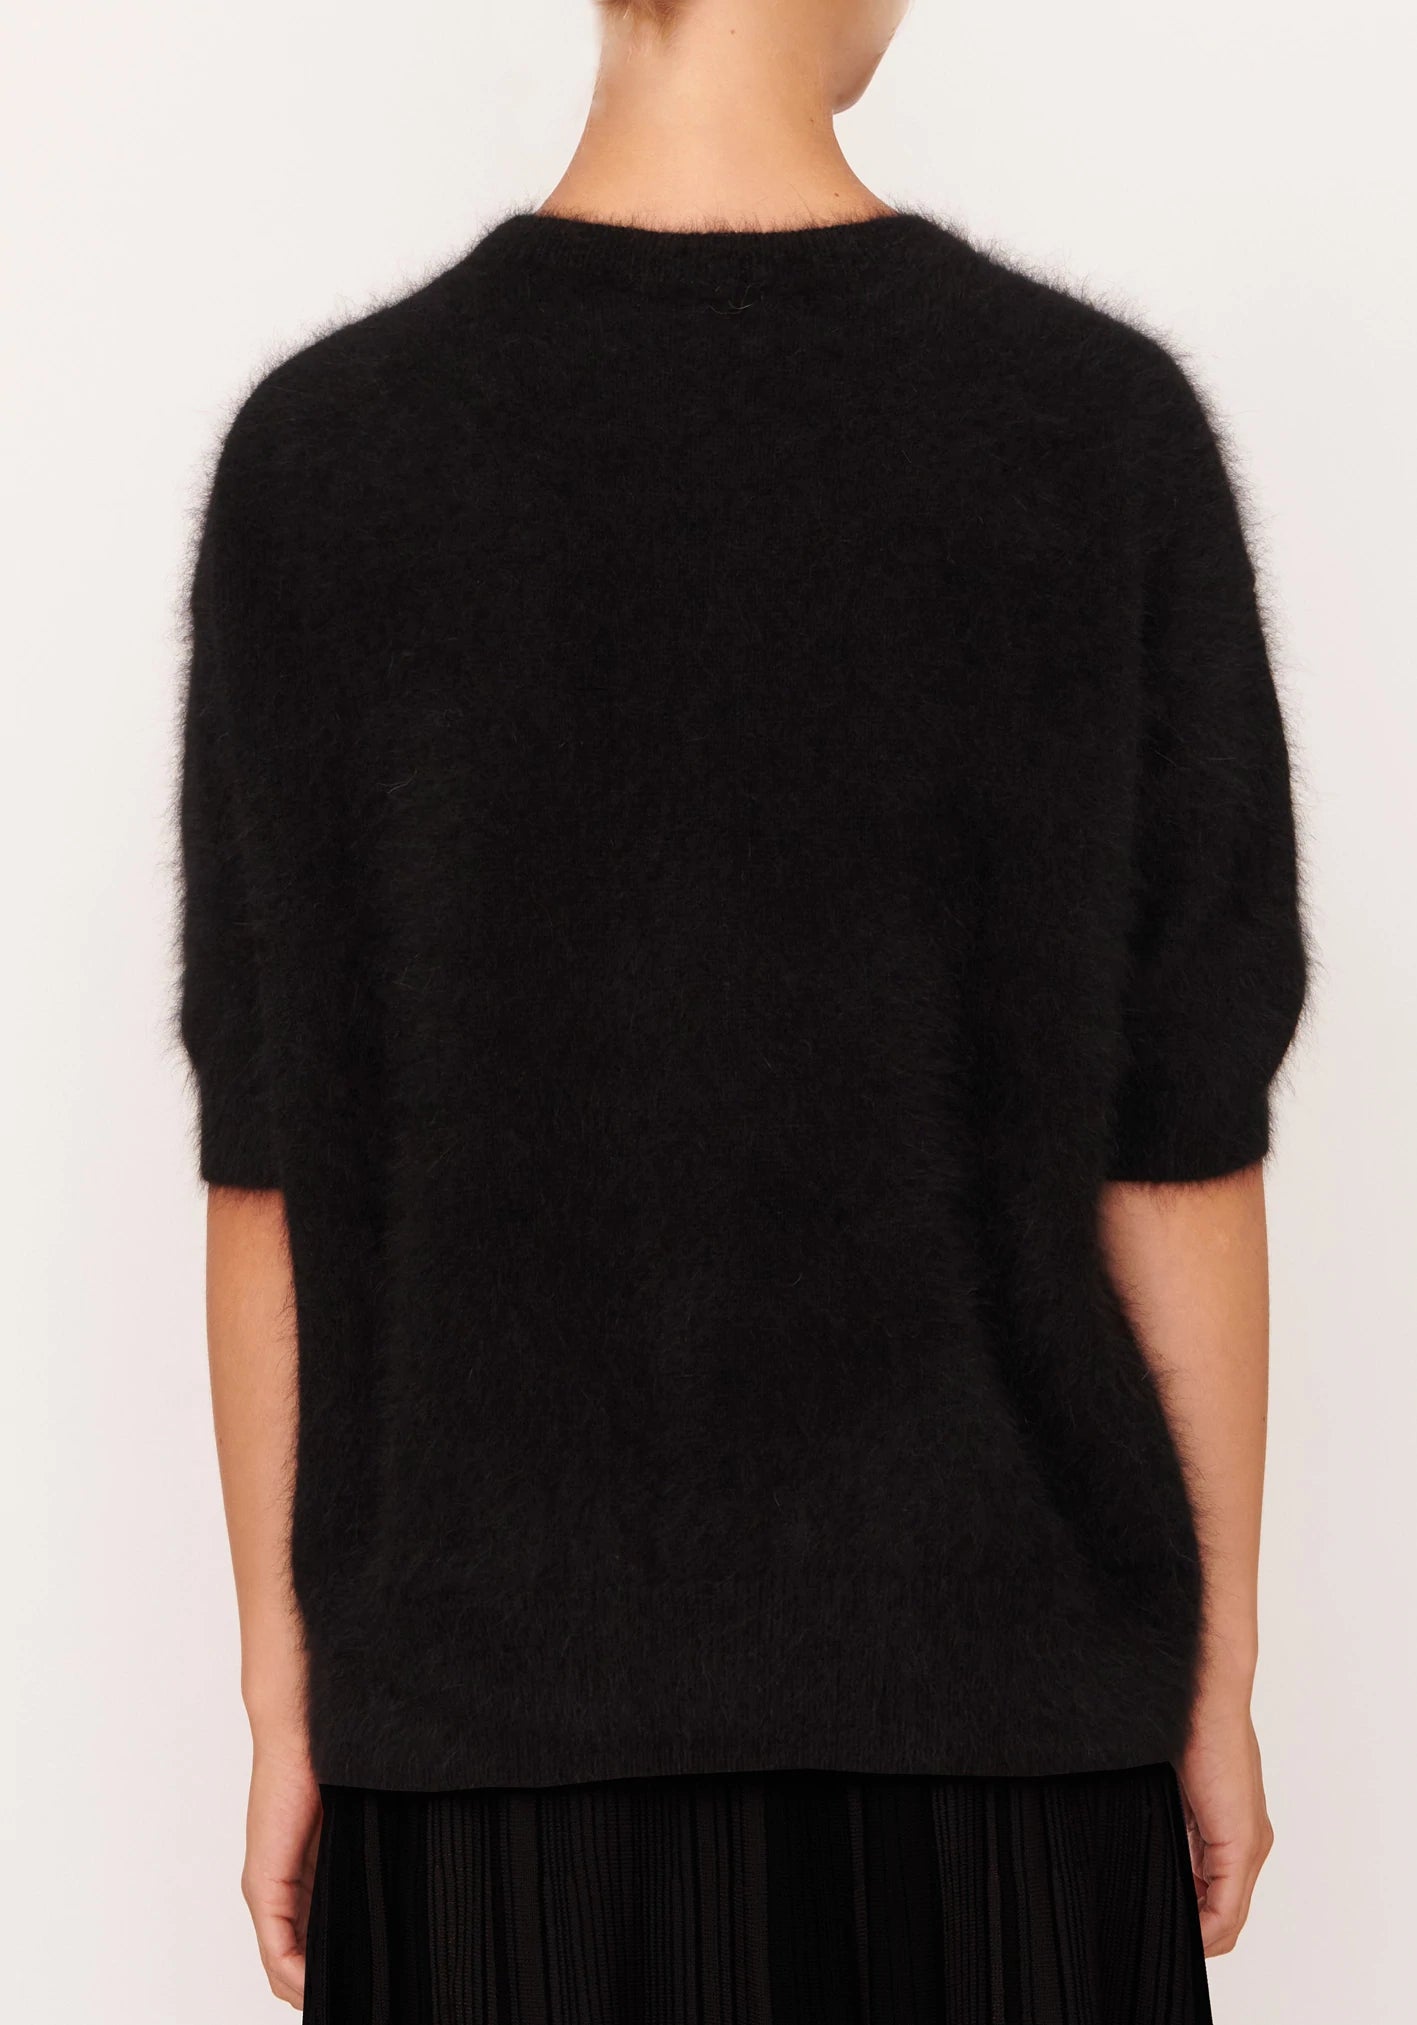 POL Clothing - Genus Angora Knit - Black